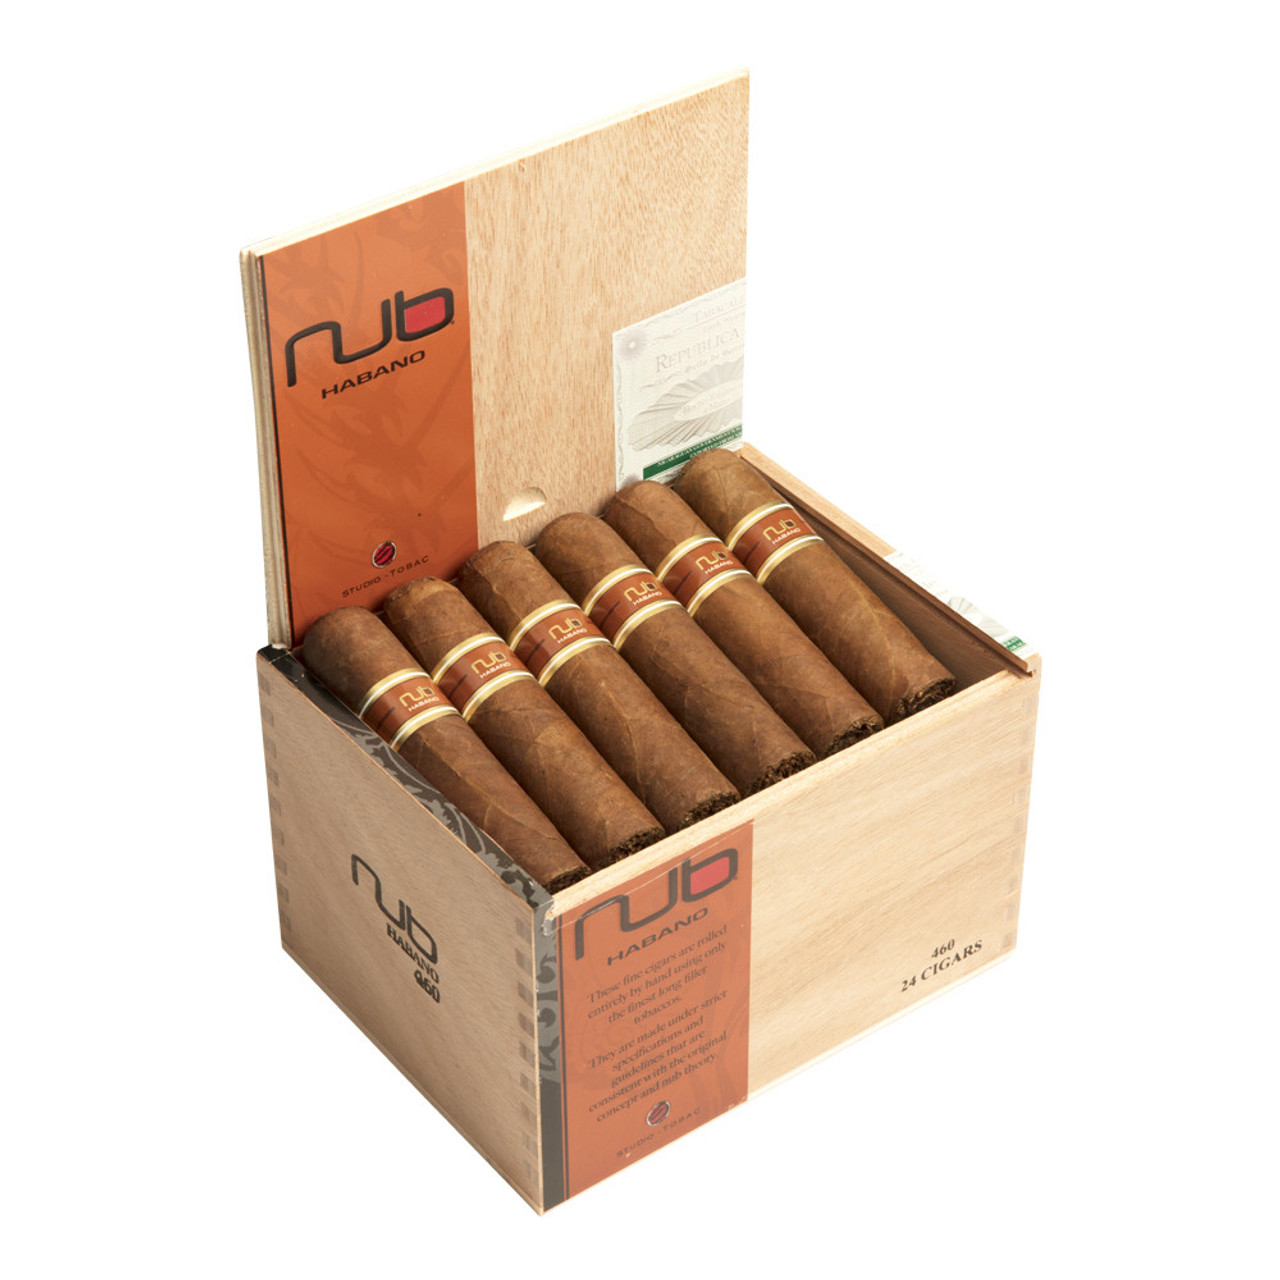 Nub 460 Habano Cigars - 4 x 60 (Box of 24) Open